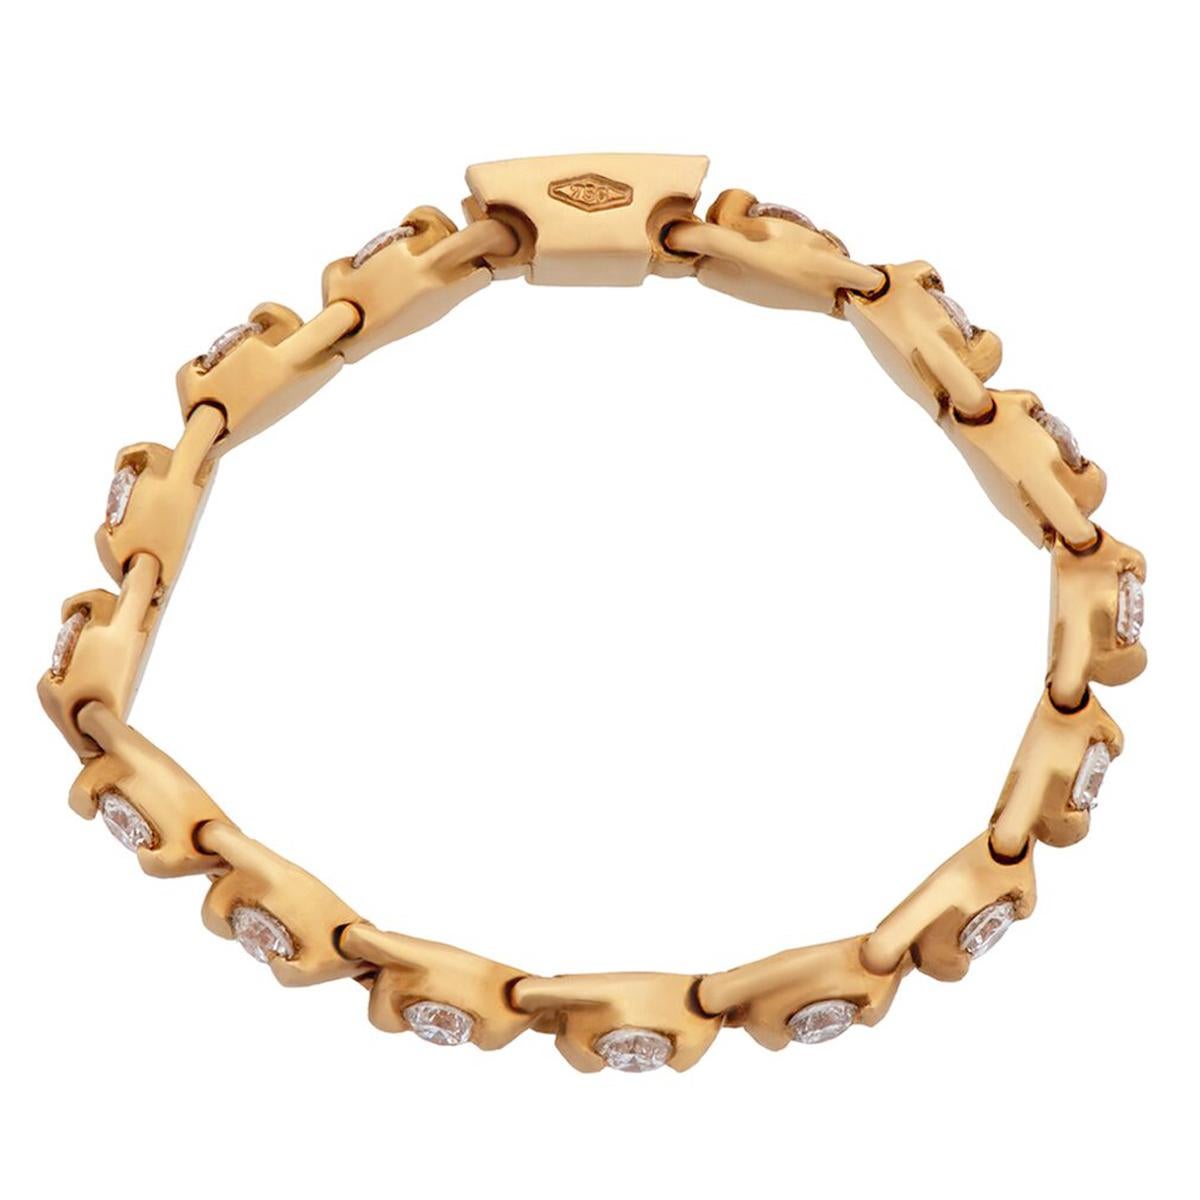 Un anneau d'éternité chic en diamant avec .25ct de diamants ronds de taille brillante sertis à la broche en or rose 18k.

Taille 6 3/4